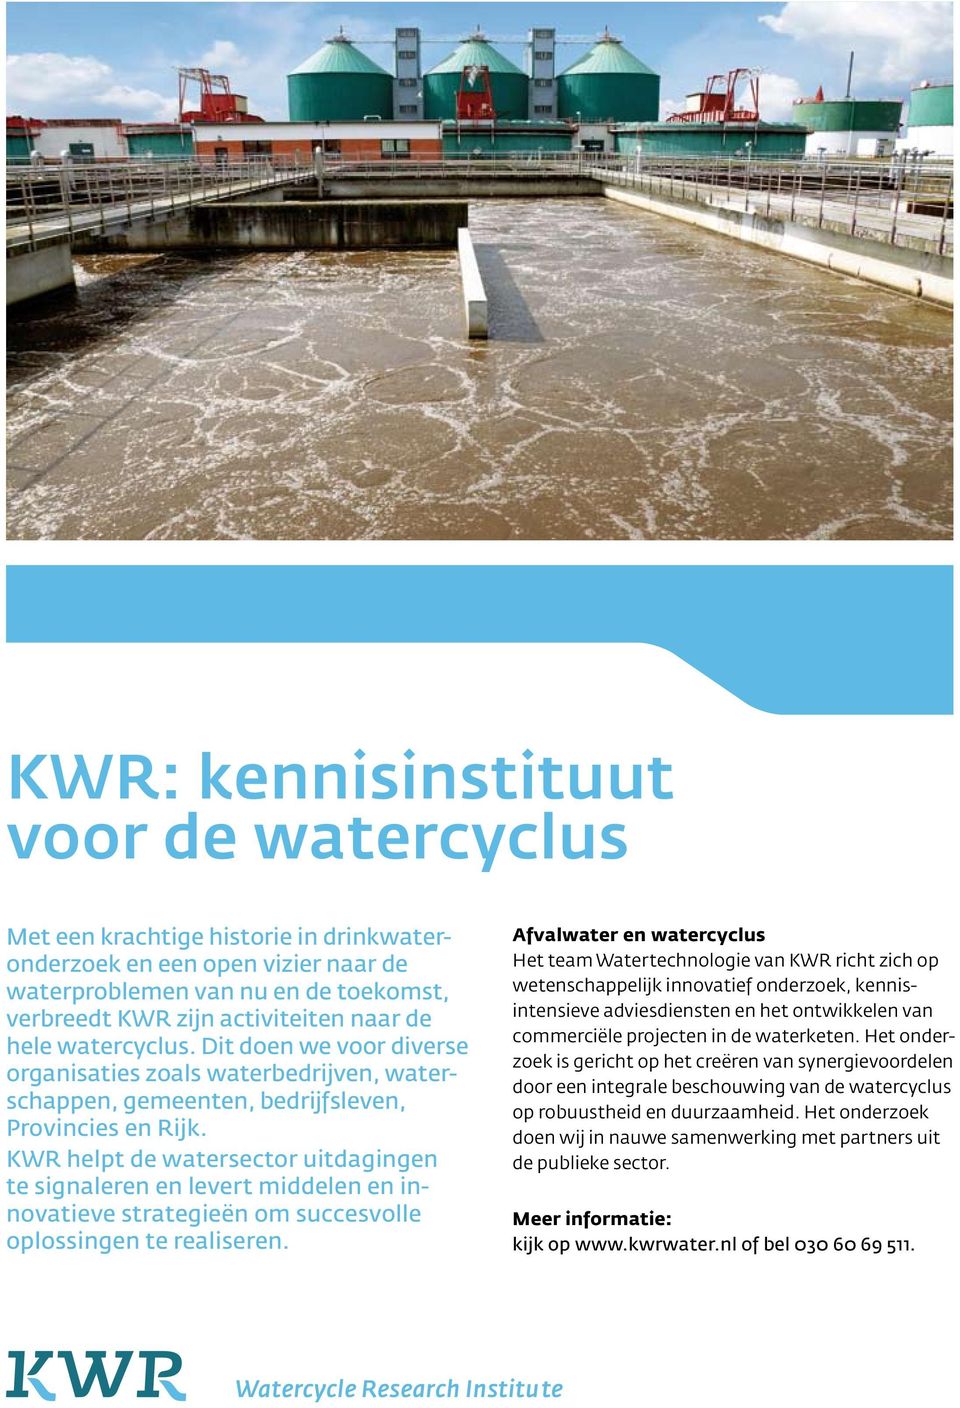 KWR helpt de watersector uitdagingen te signa leren en levert middelen en innovatieve strategieën om succesvolle oplossingen te realiseren.